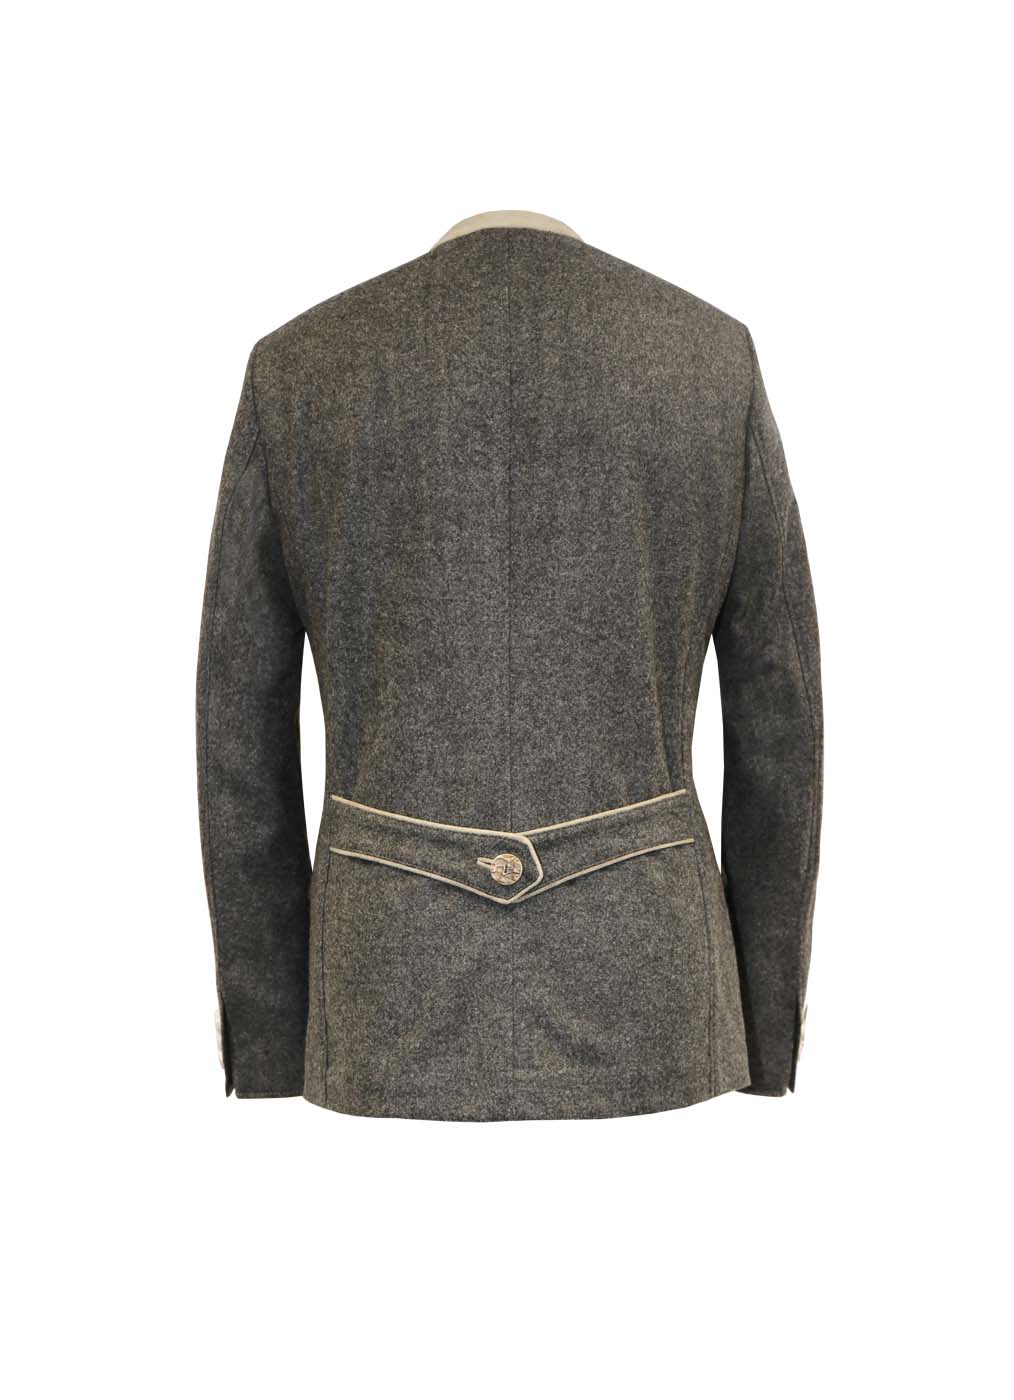 Jacke aus Loden Herren “Steinplatte”, grau melange